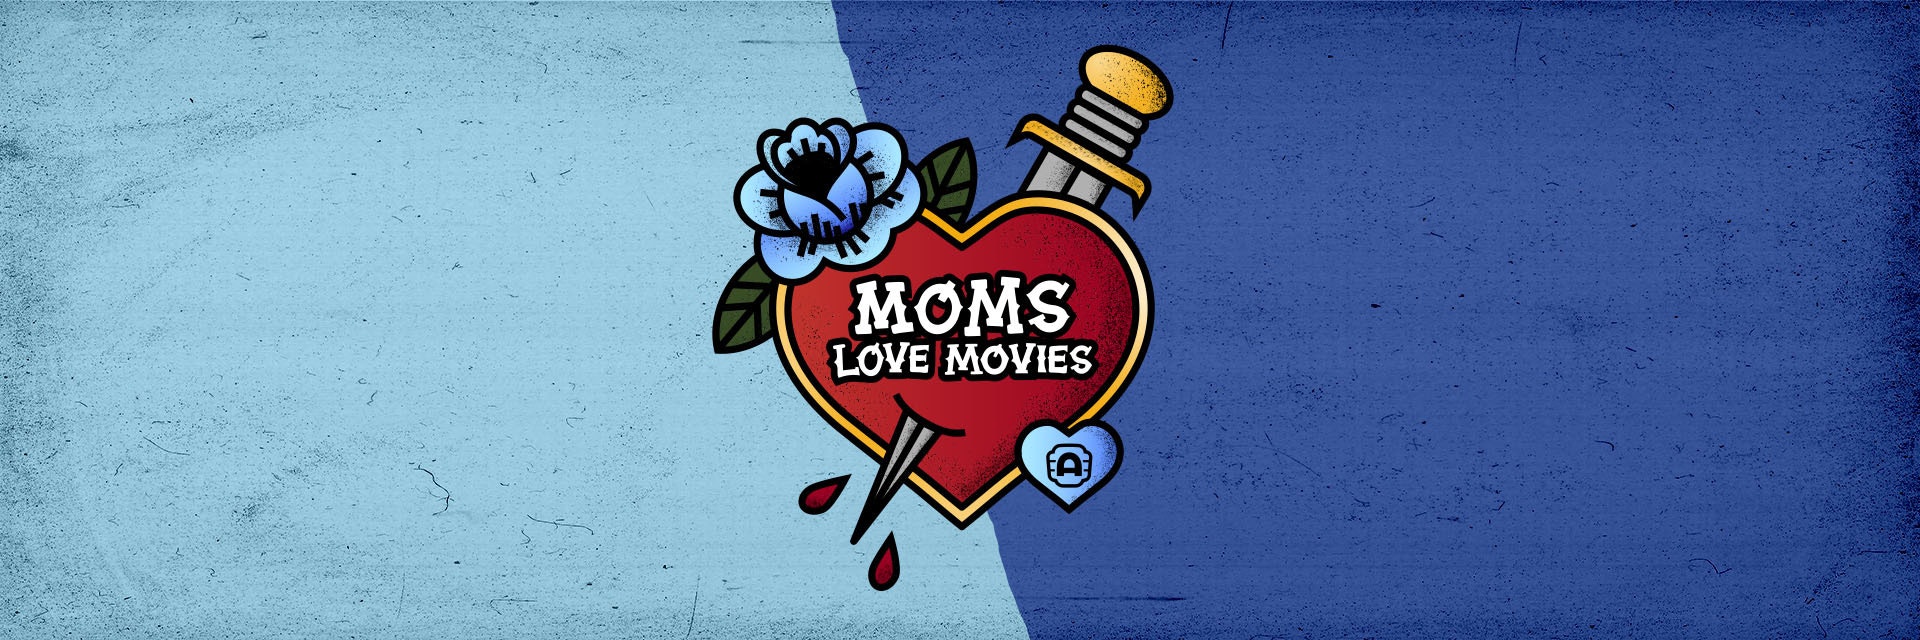 Moms Love Movies2024 Web FSL 1920x640